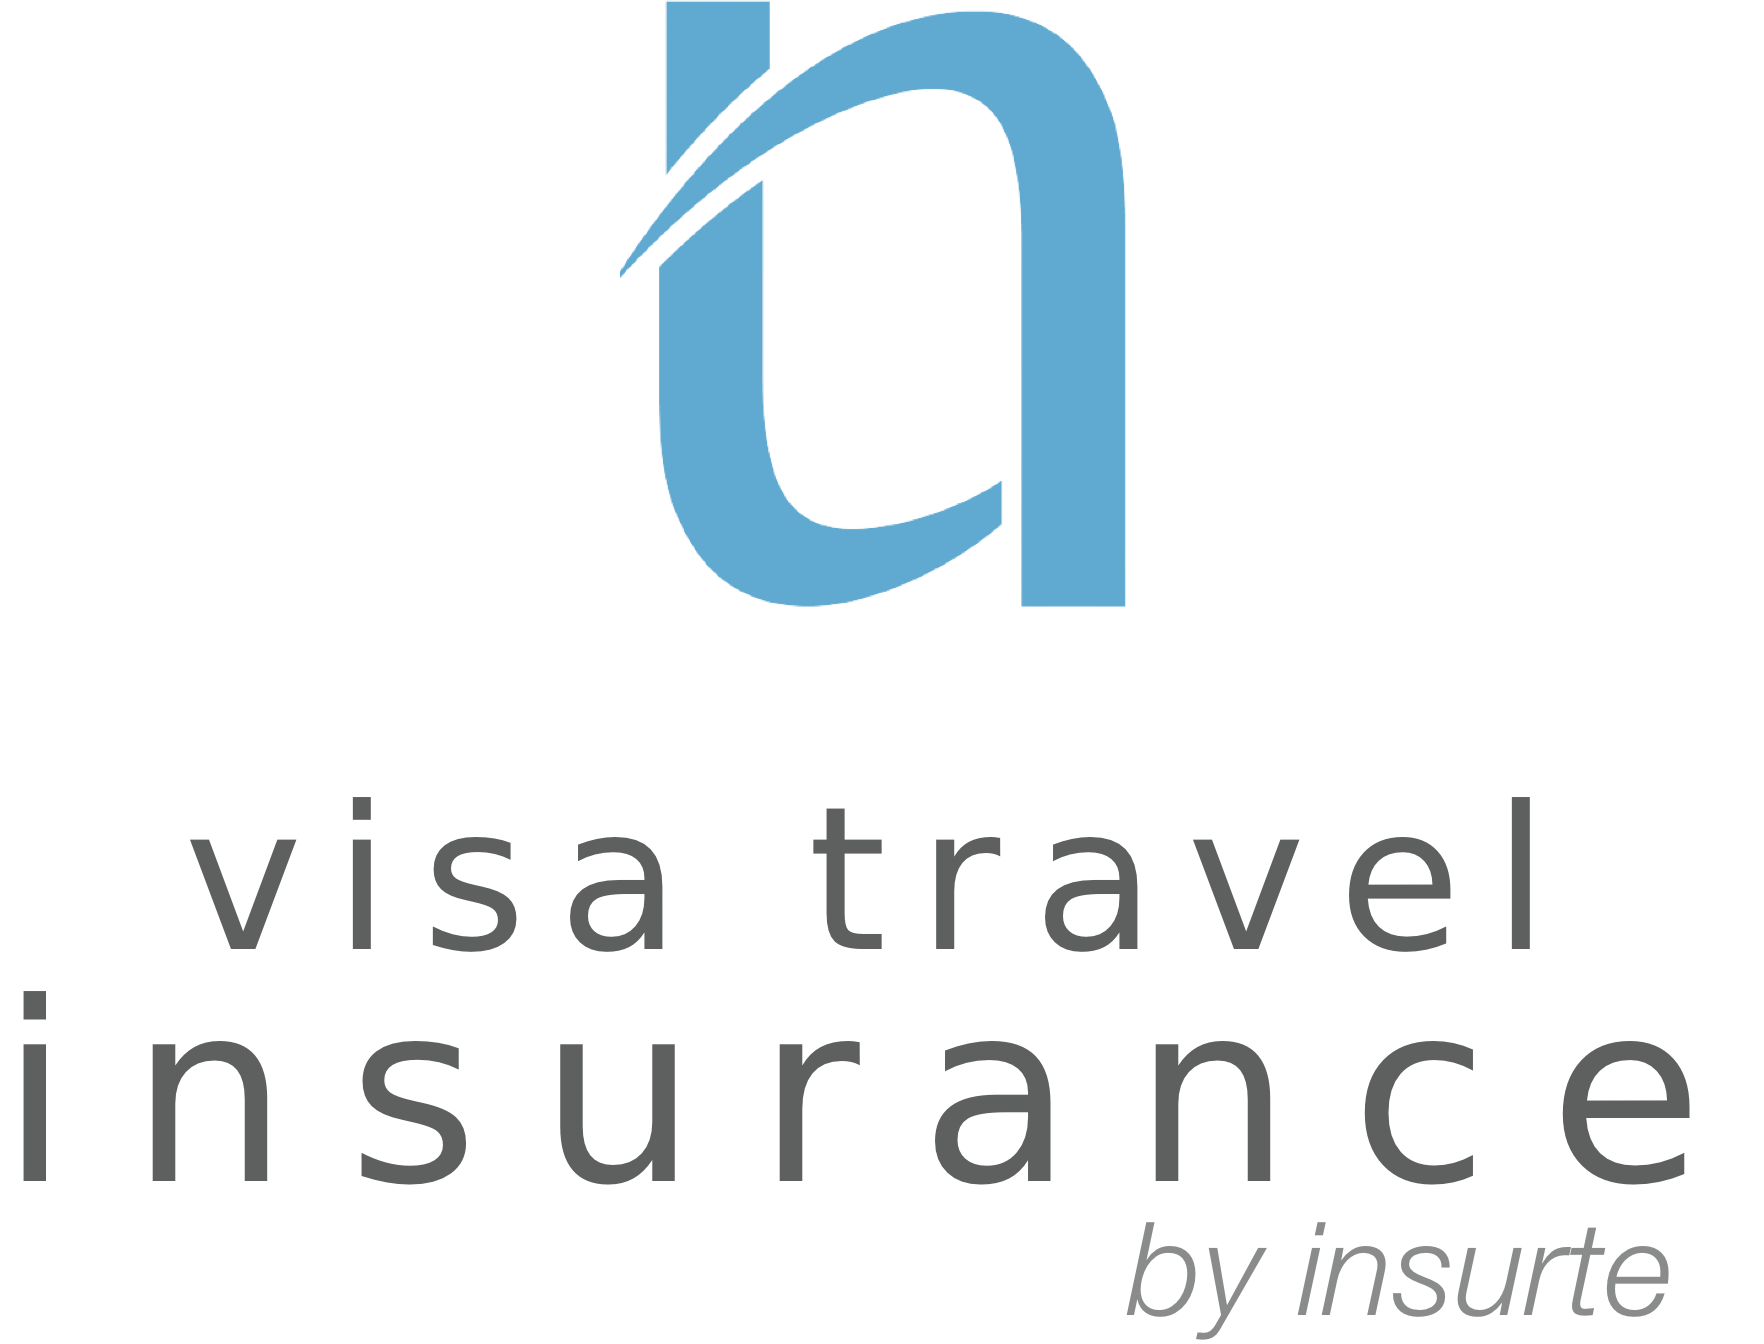 Страхование путешествий по визе от Insurté